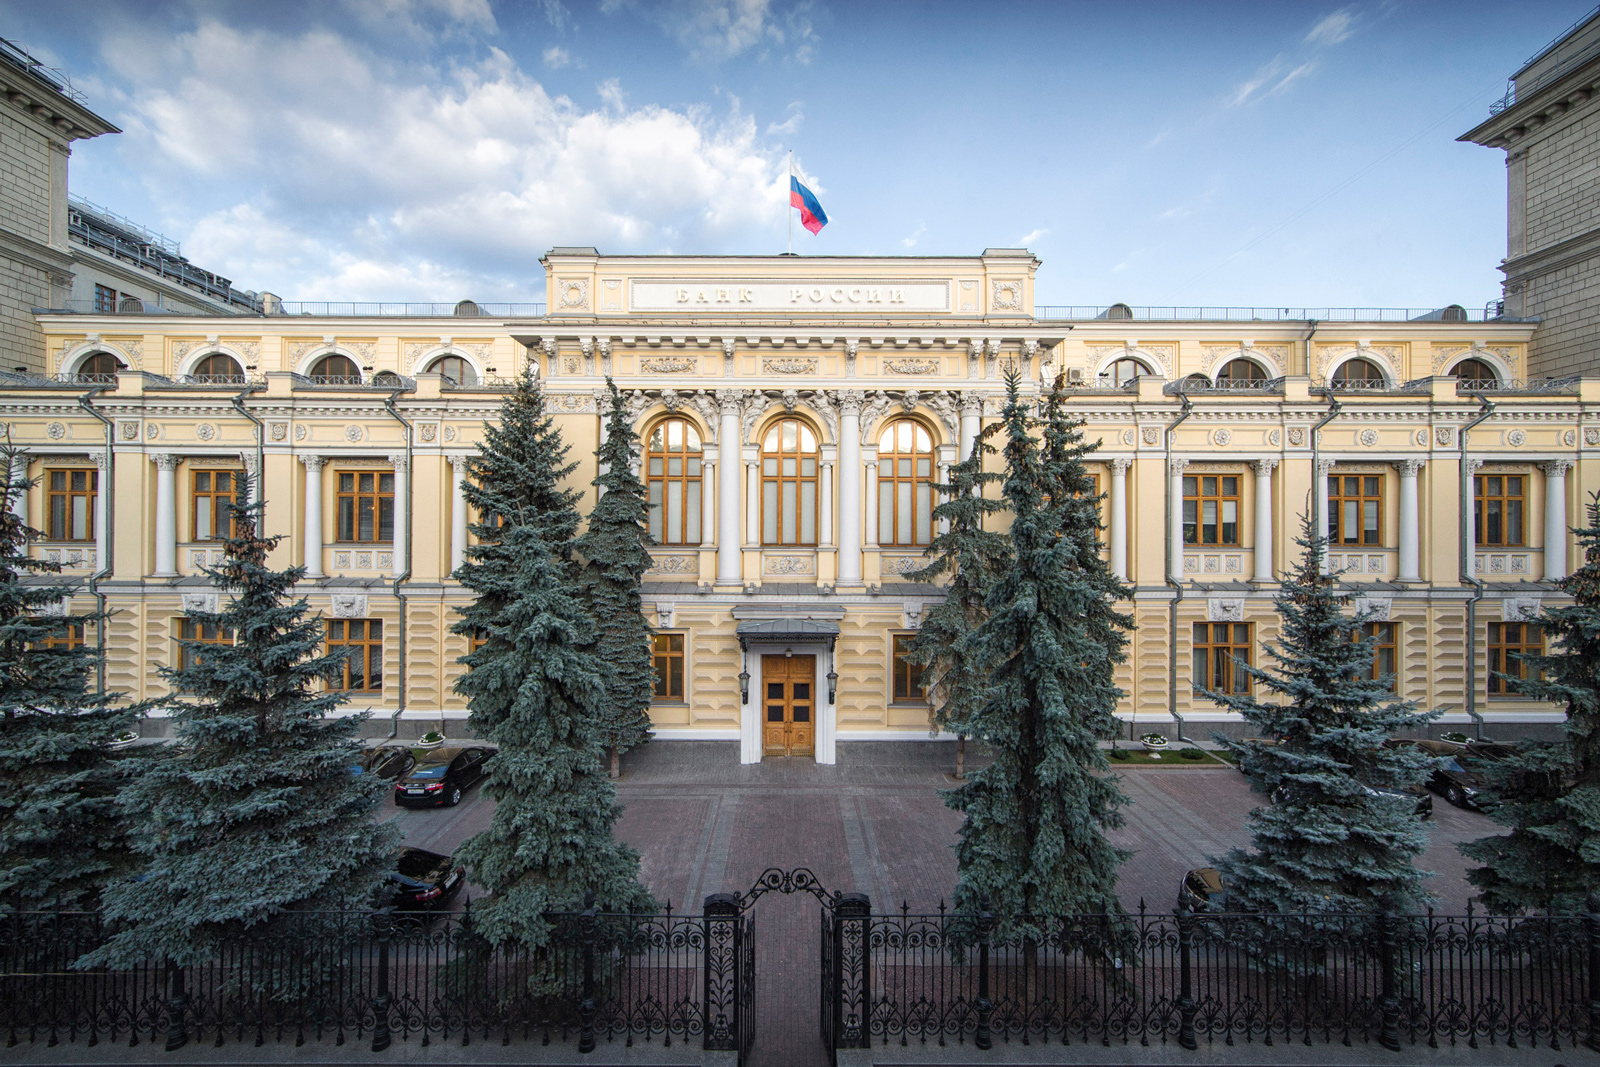 Реферат Банк России Статус Организация Права Функции